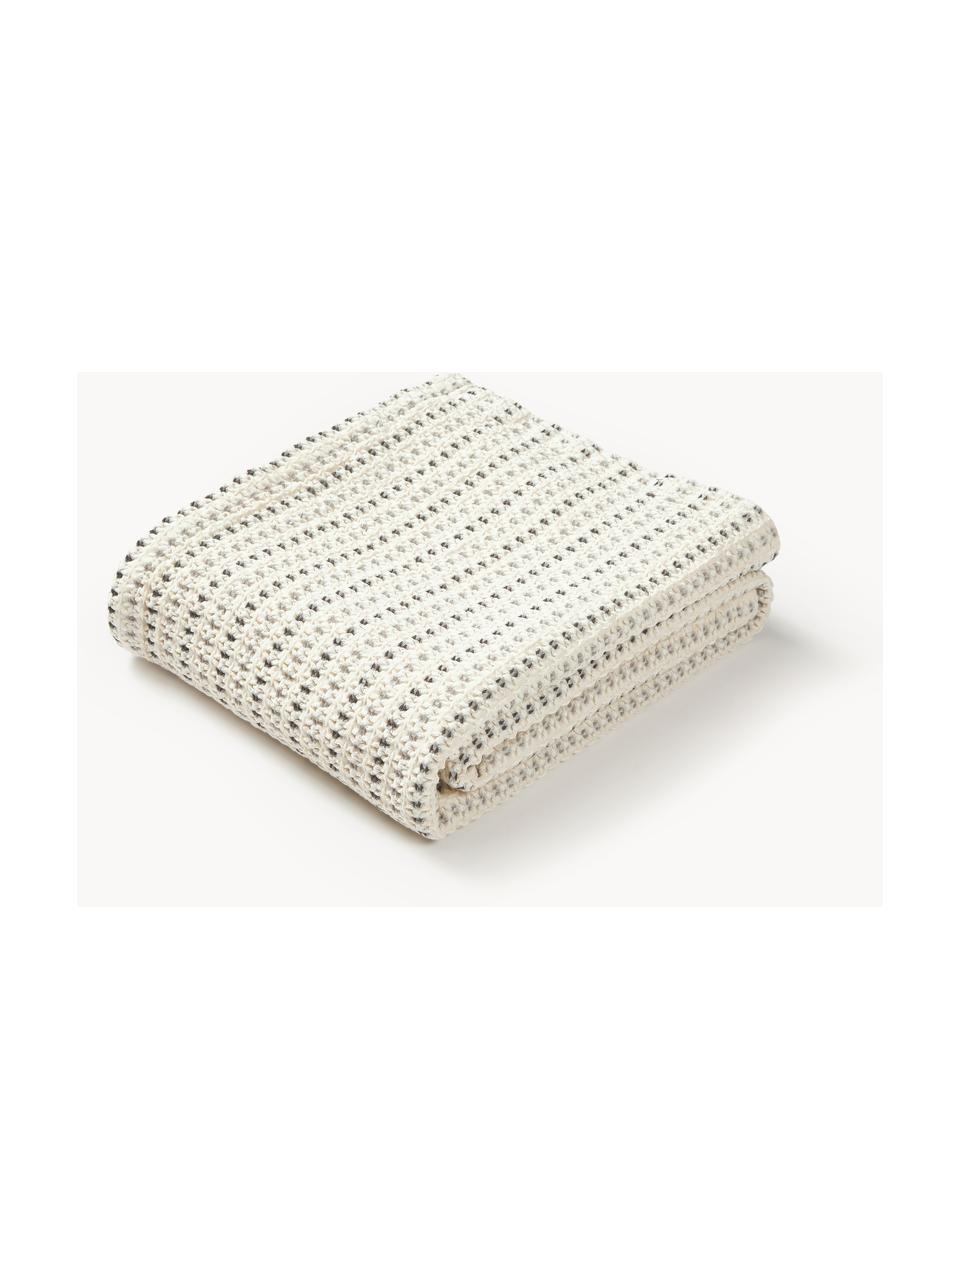 Koc z bawełny Kimber, 100% bawełna, Kremowobiały, odcienie szarego, S 130 x D 170 cm